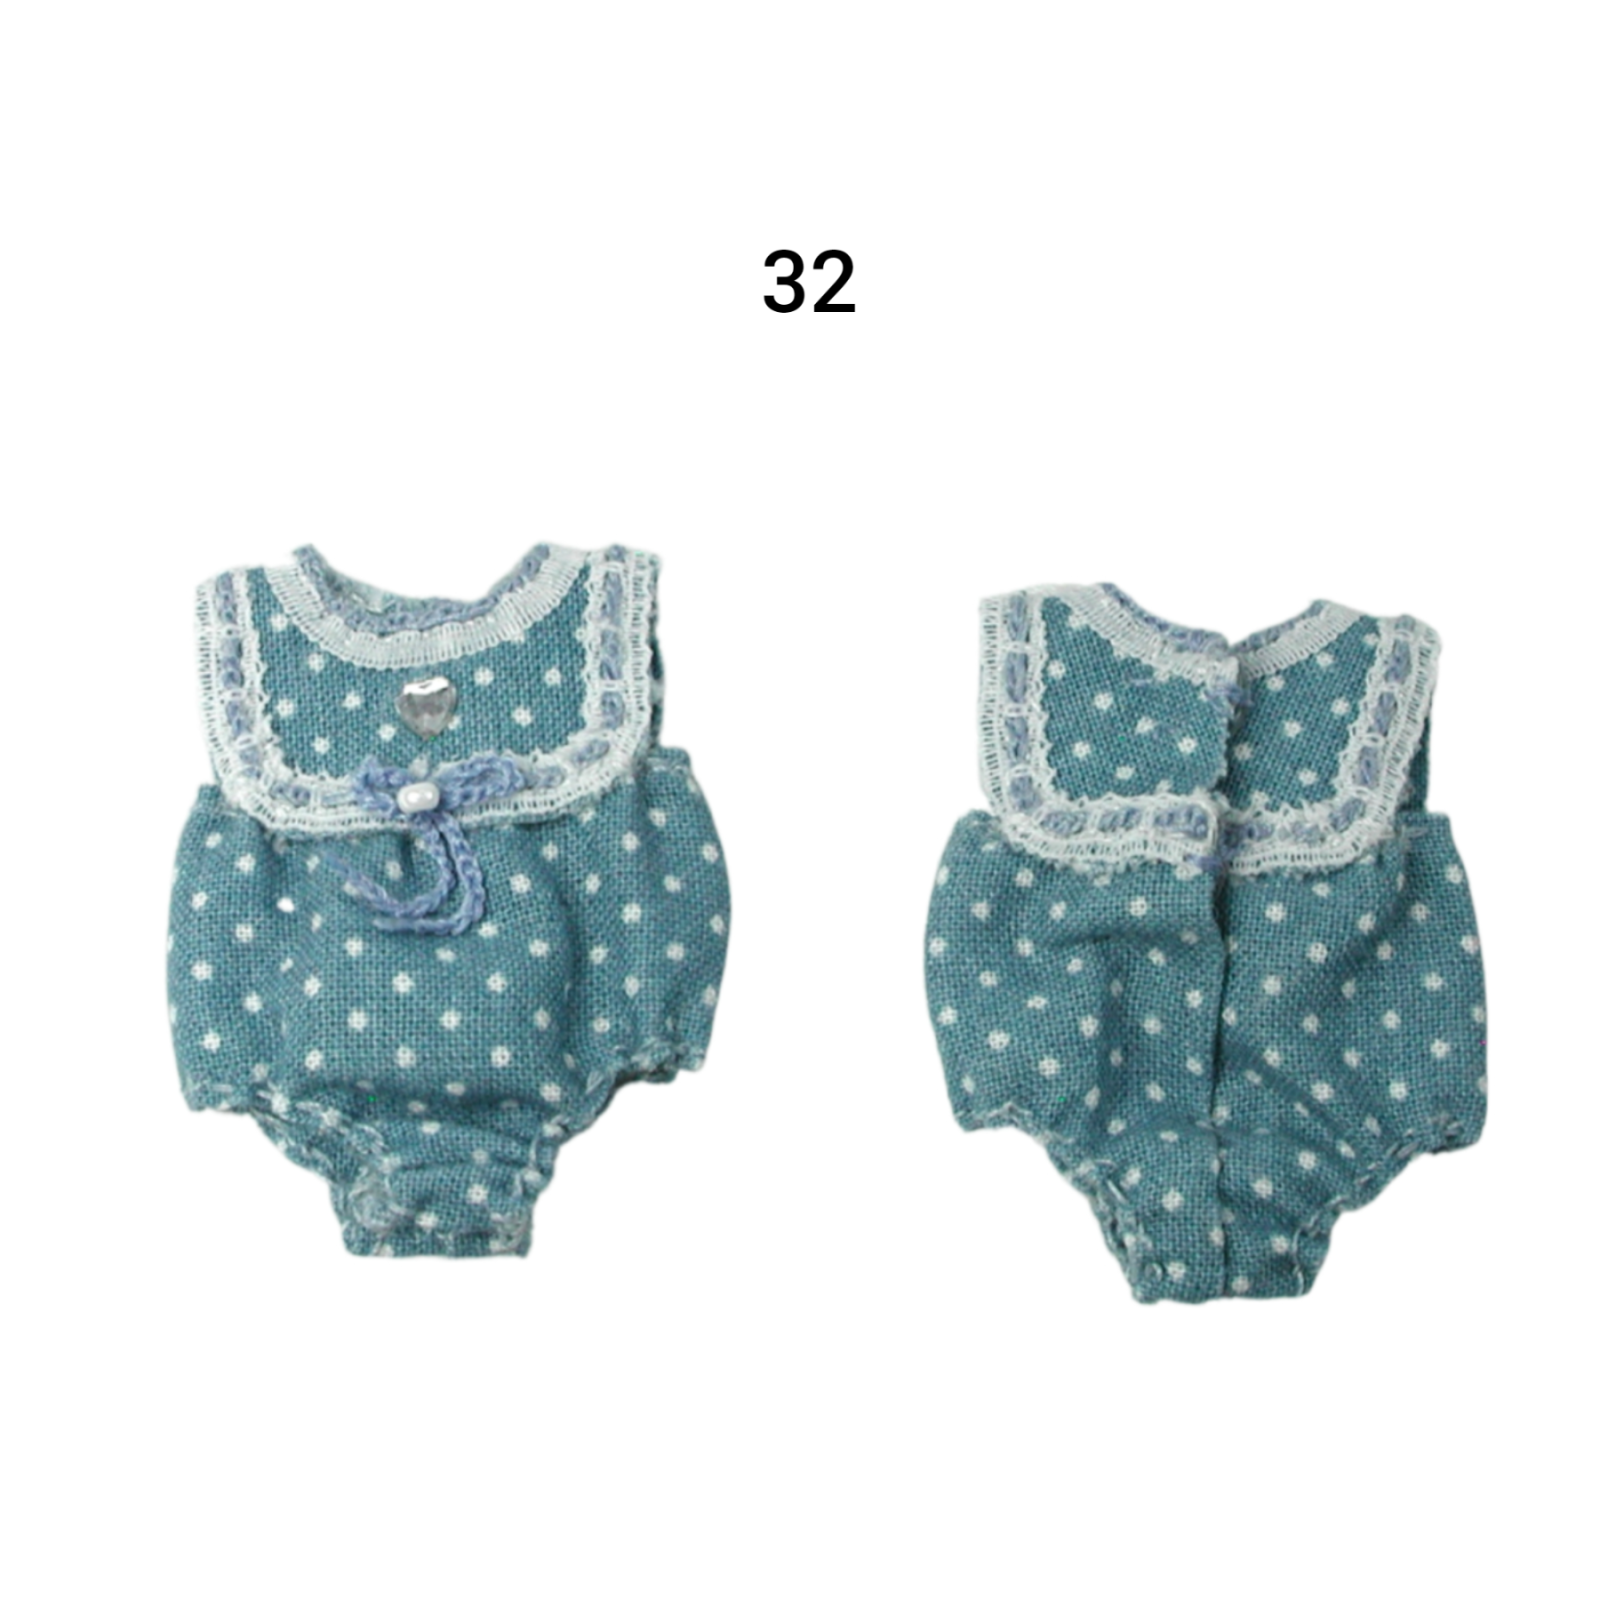 Pumphose Spielhose für das Baby Kleidung Maßstab 1:12 8